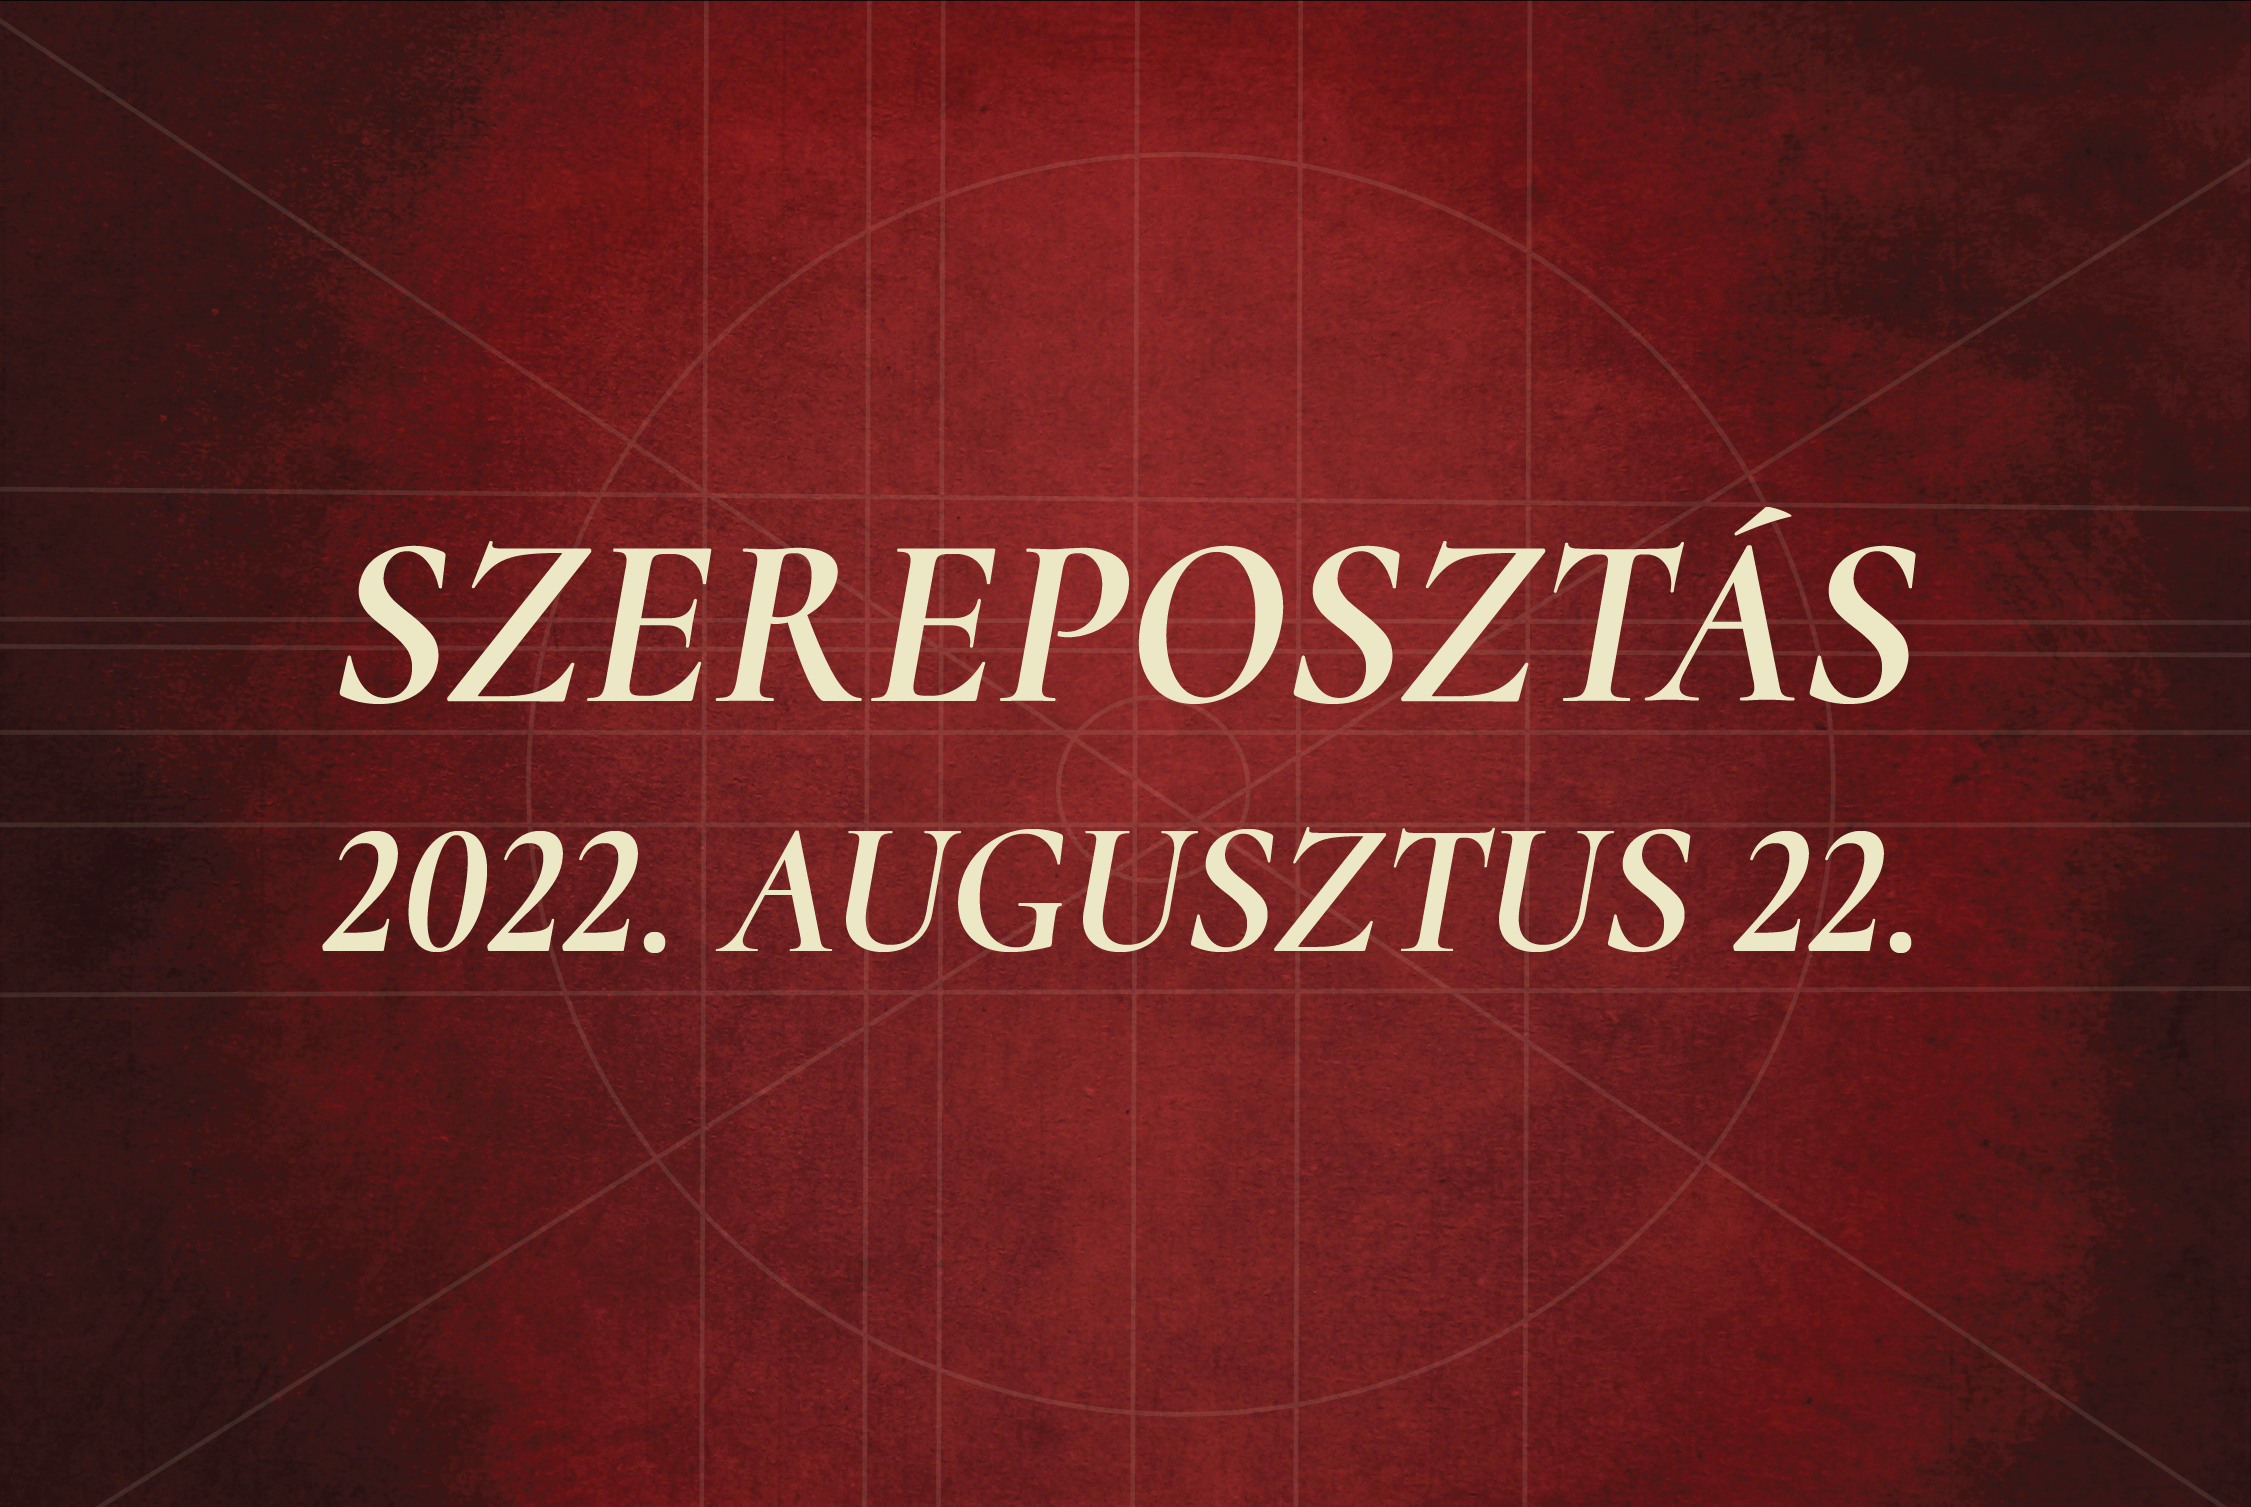 Szereposztás / 2022.08.22.